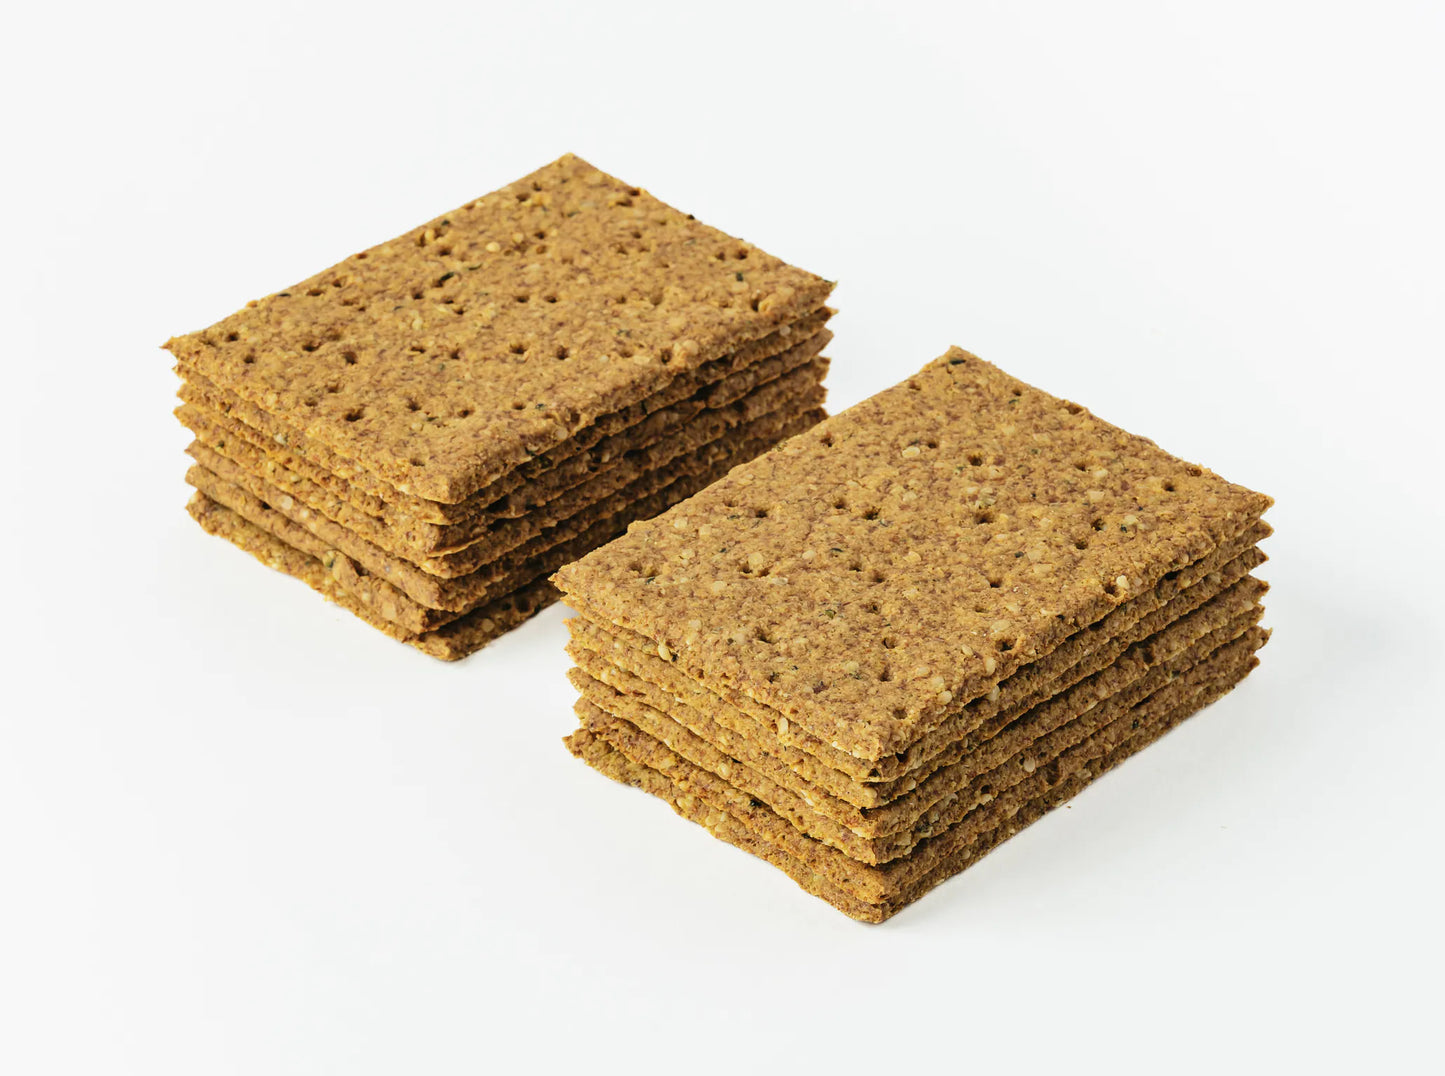 No Grainer Paleo Crackers With Hemp & Turmeric 185g, Vegan, Gluten-Free & Grain Free